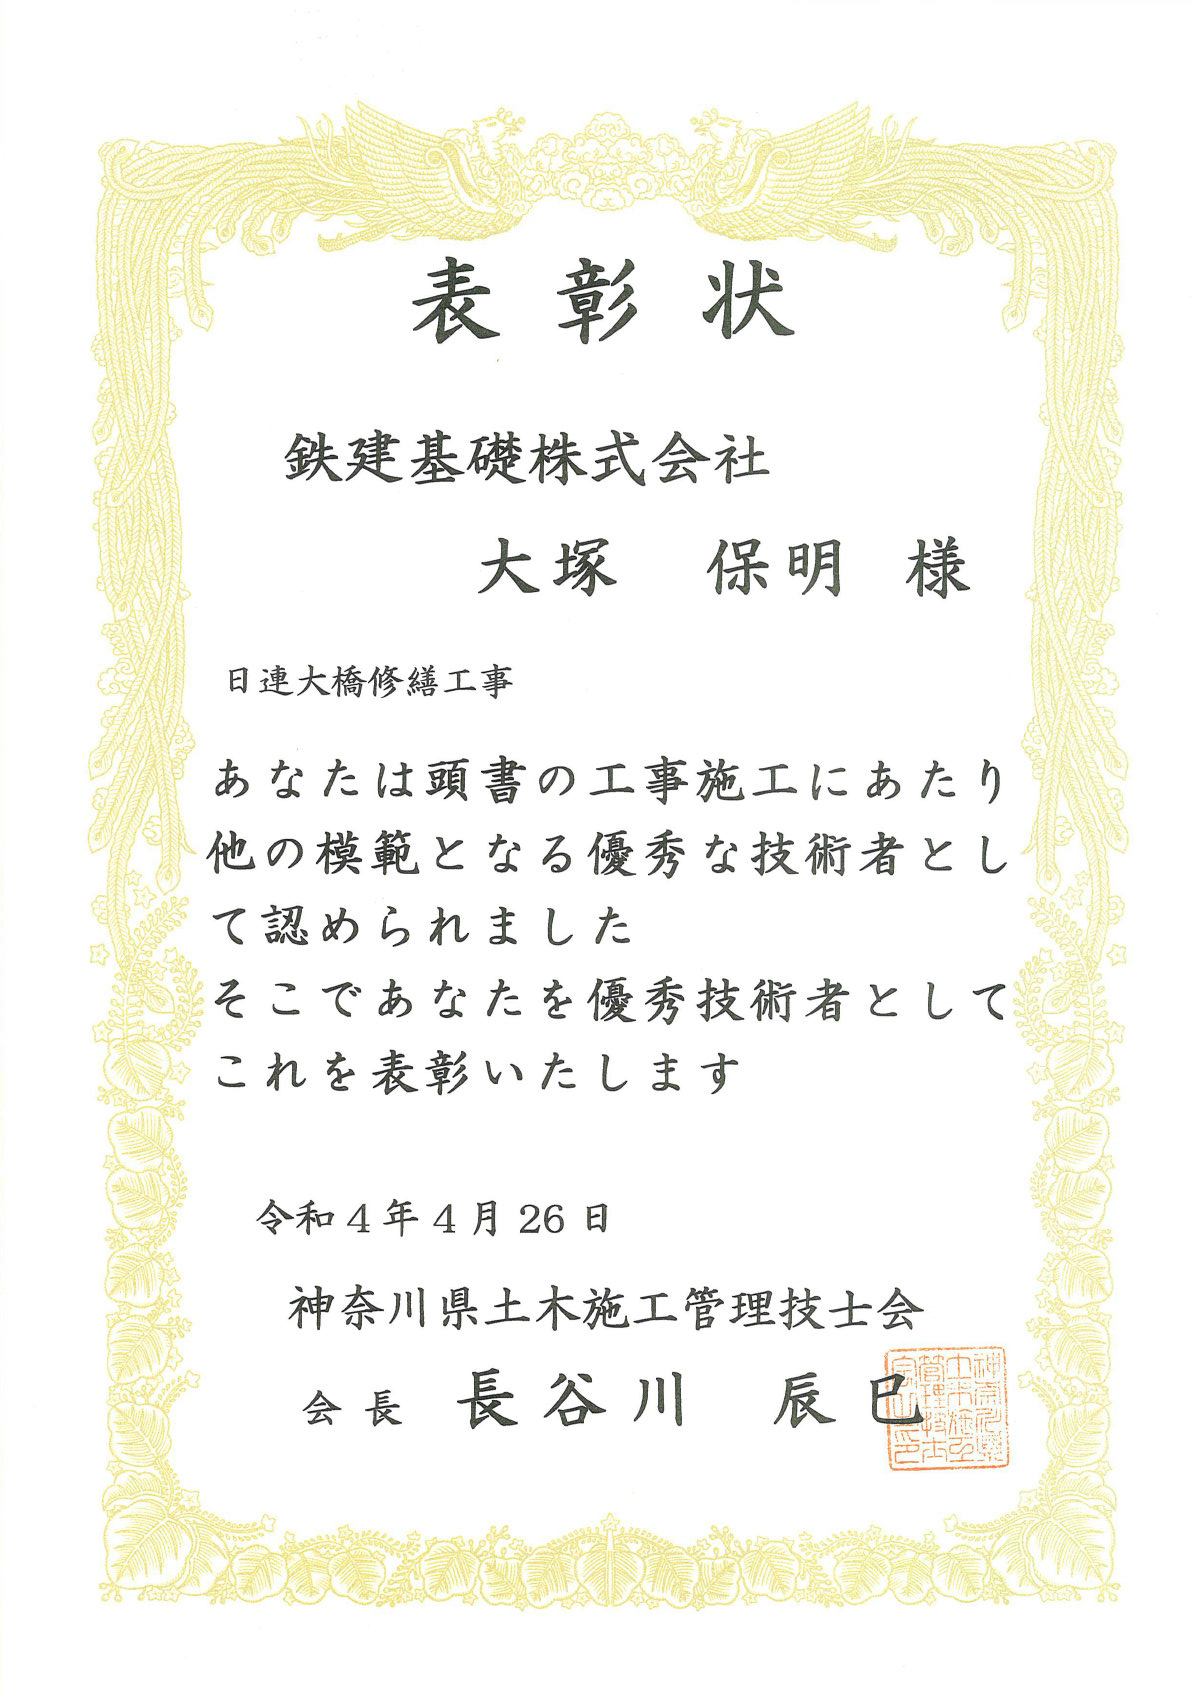 神奈川県施工技士会から優秀技術者賞を受賞